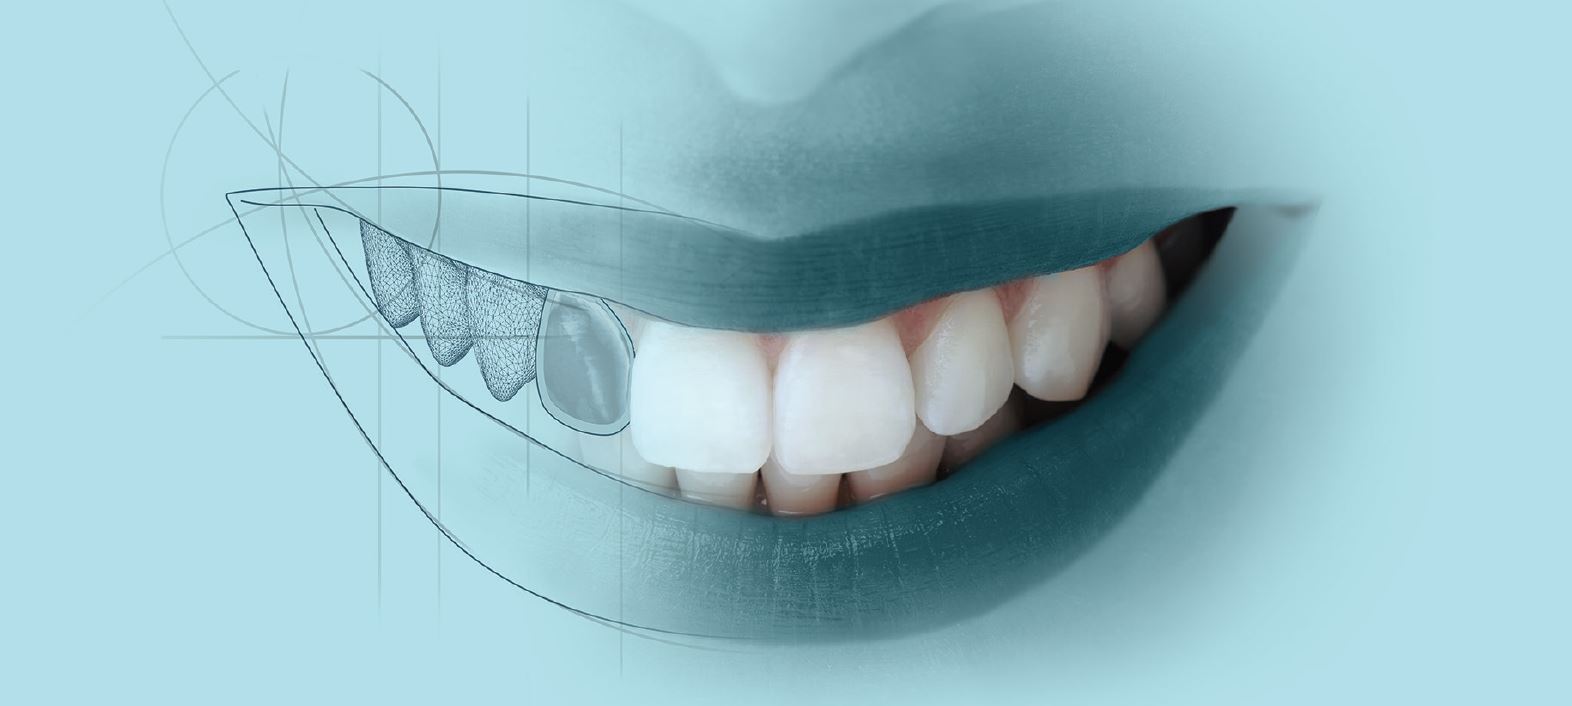 Digital Aesthetics and Digital Dentistry